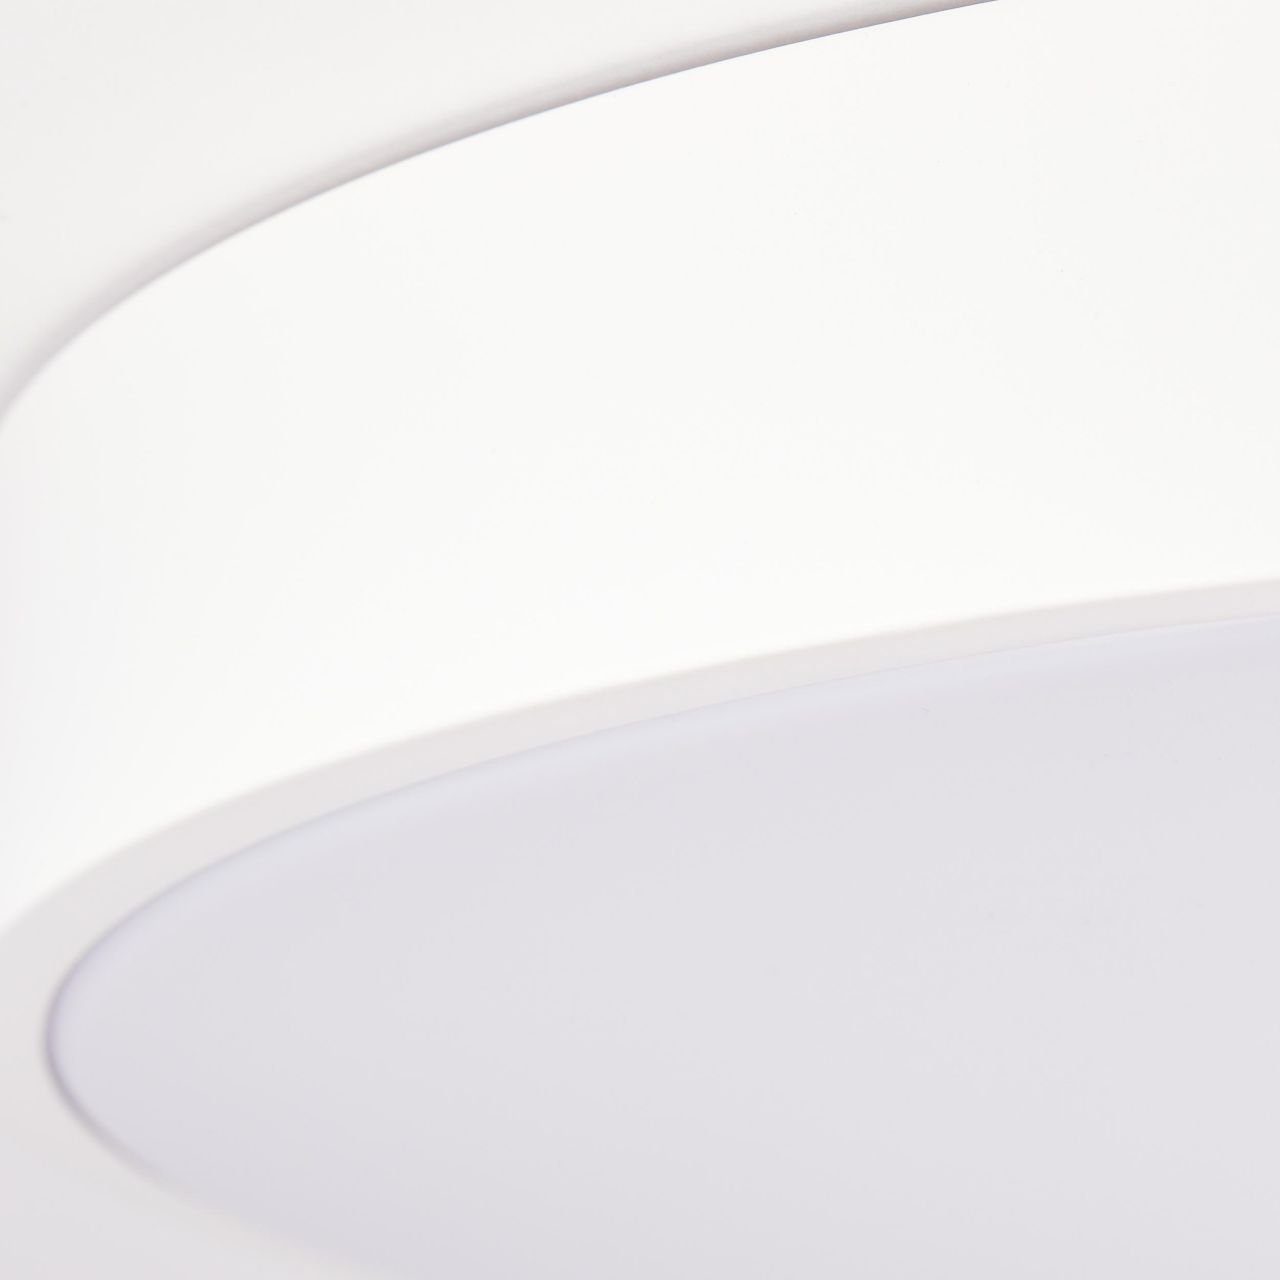 LED 49cm Deckenleuchte sand/weiß, Wand- Deckenleuchte Brilliant 3600-6500K, Slimline, Metall/Kun und Slimline Lampe,